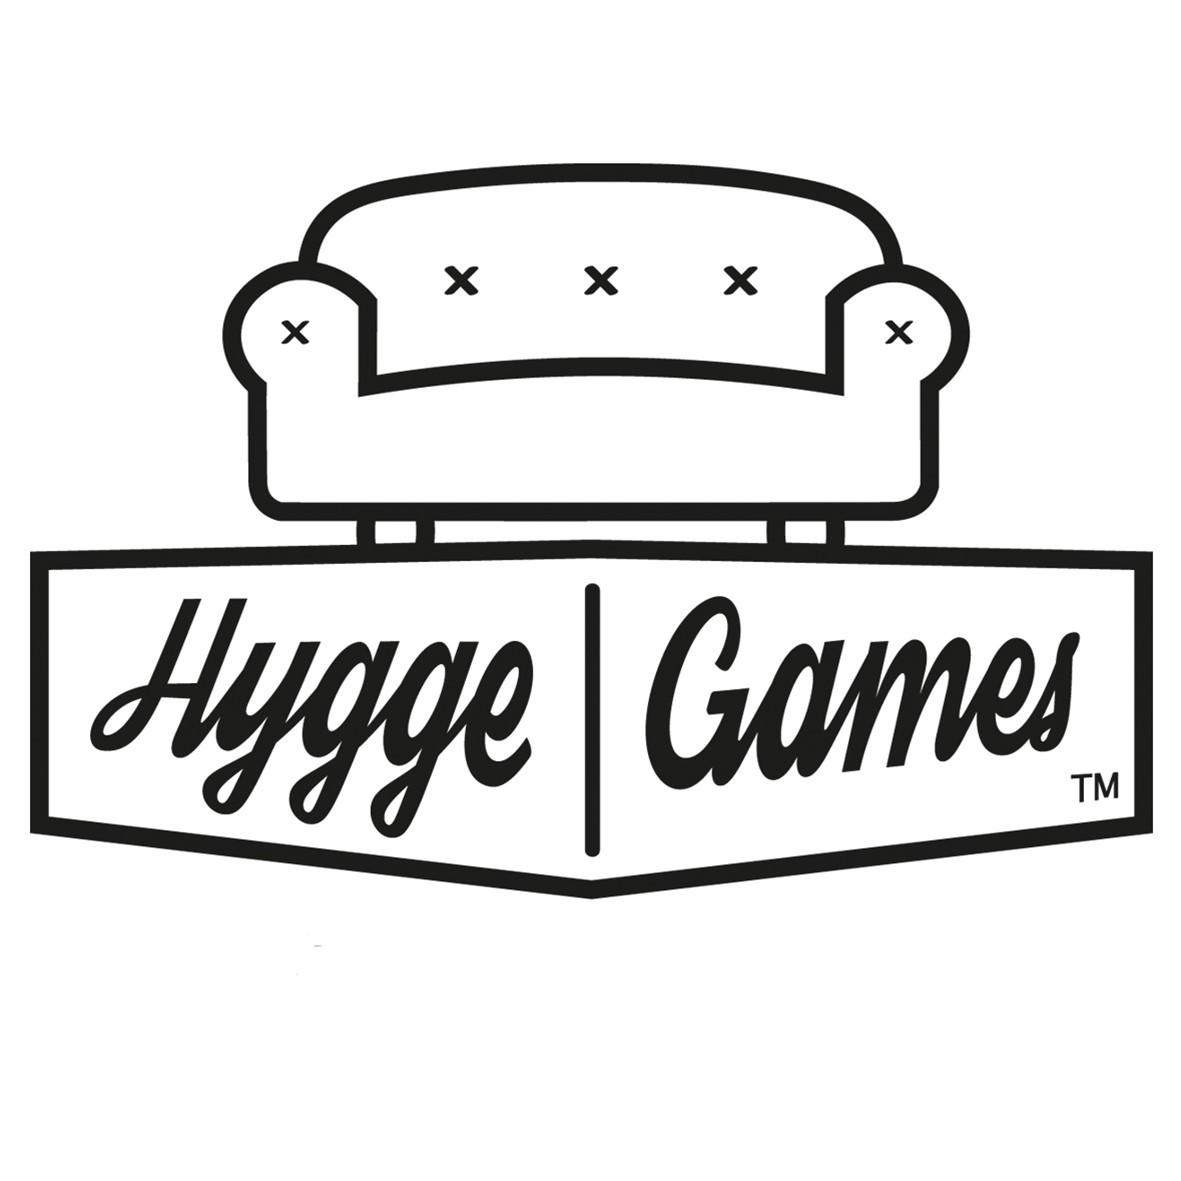 Hygge games